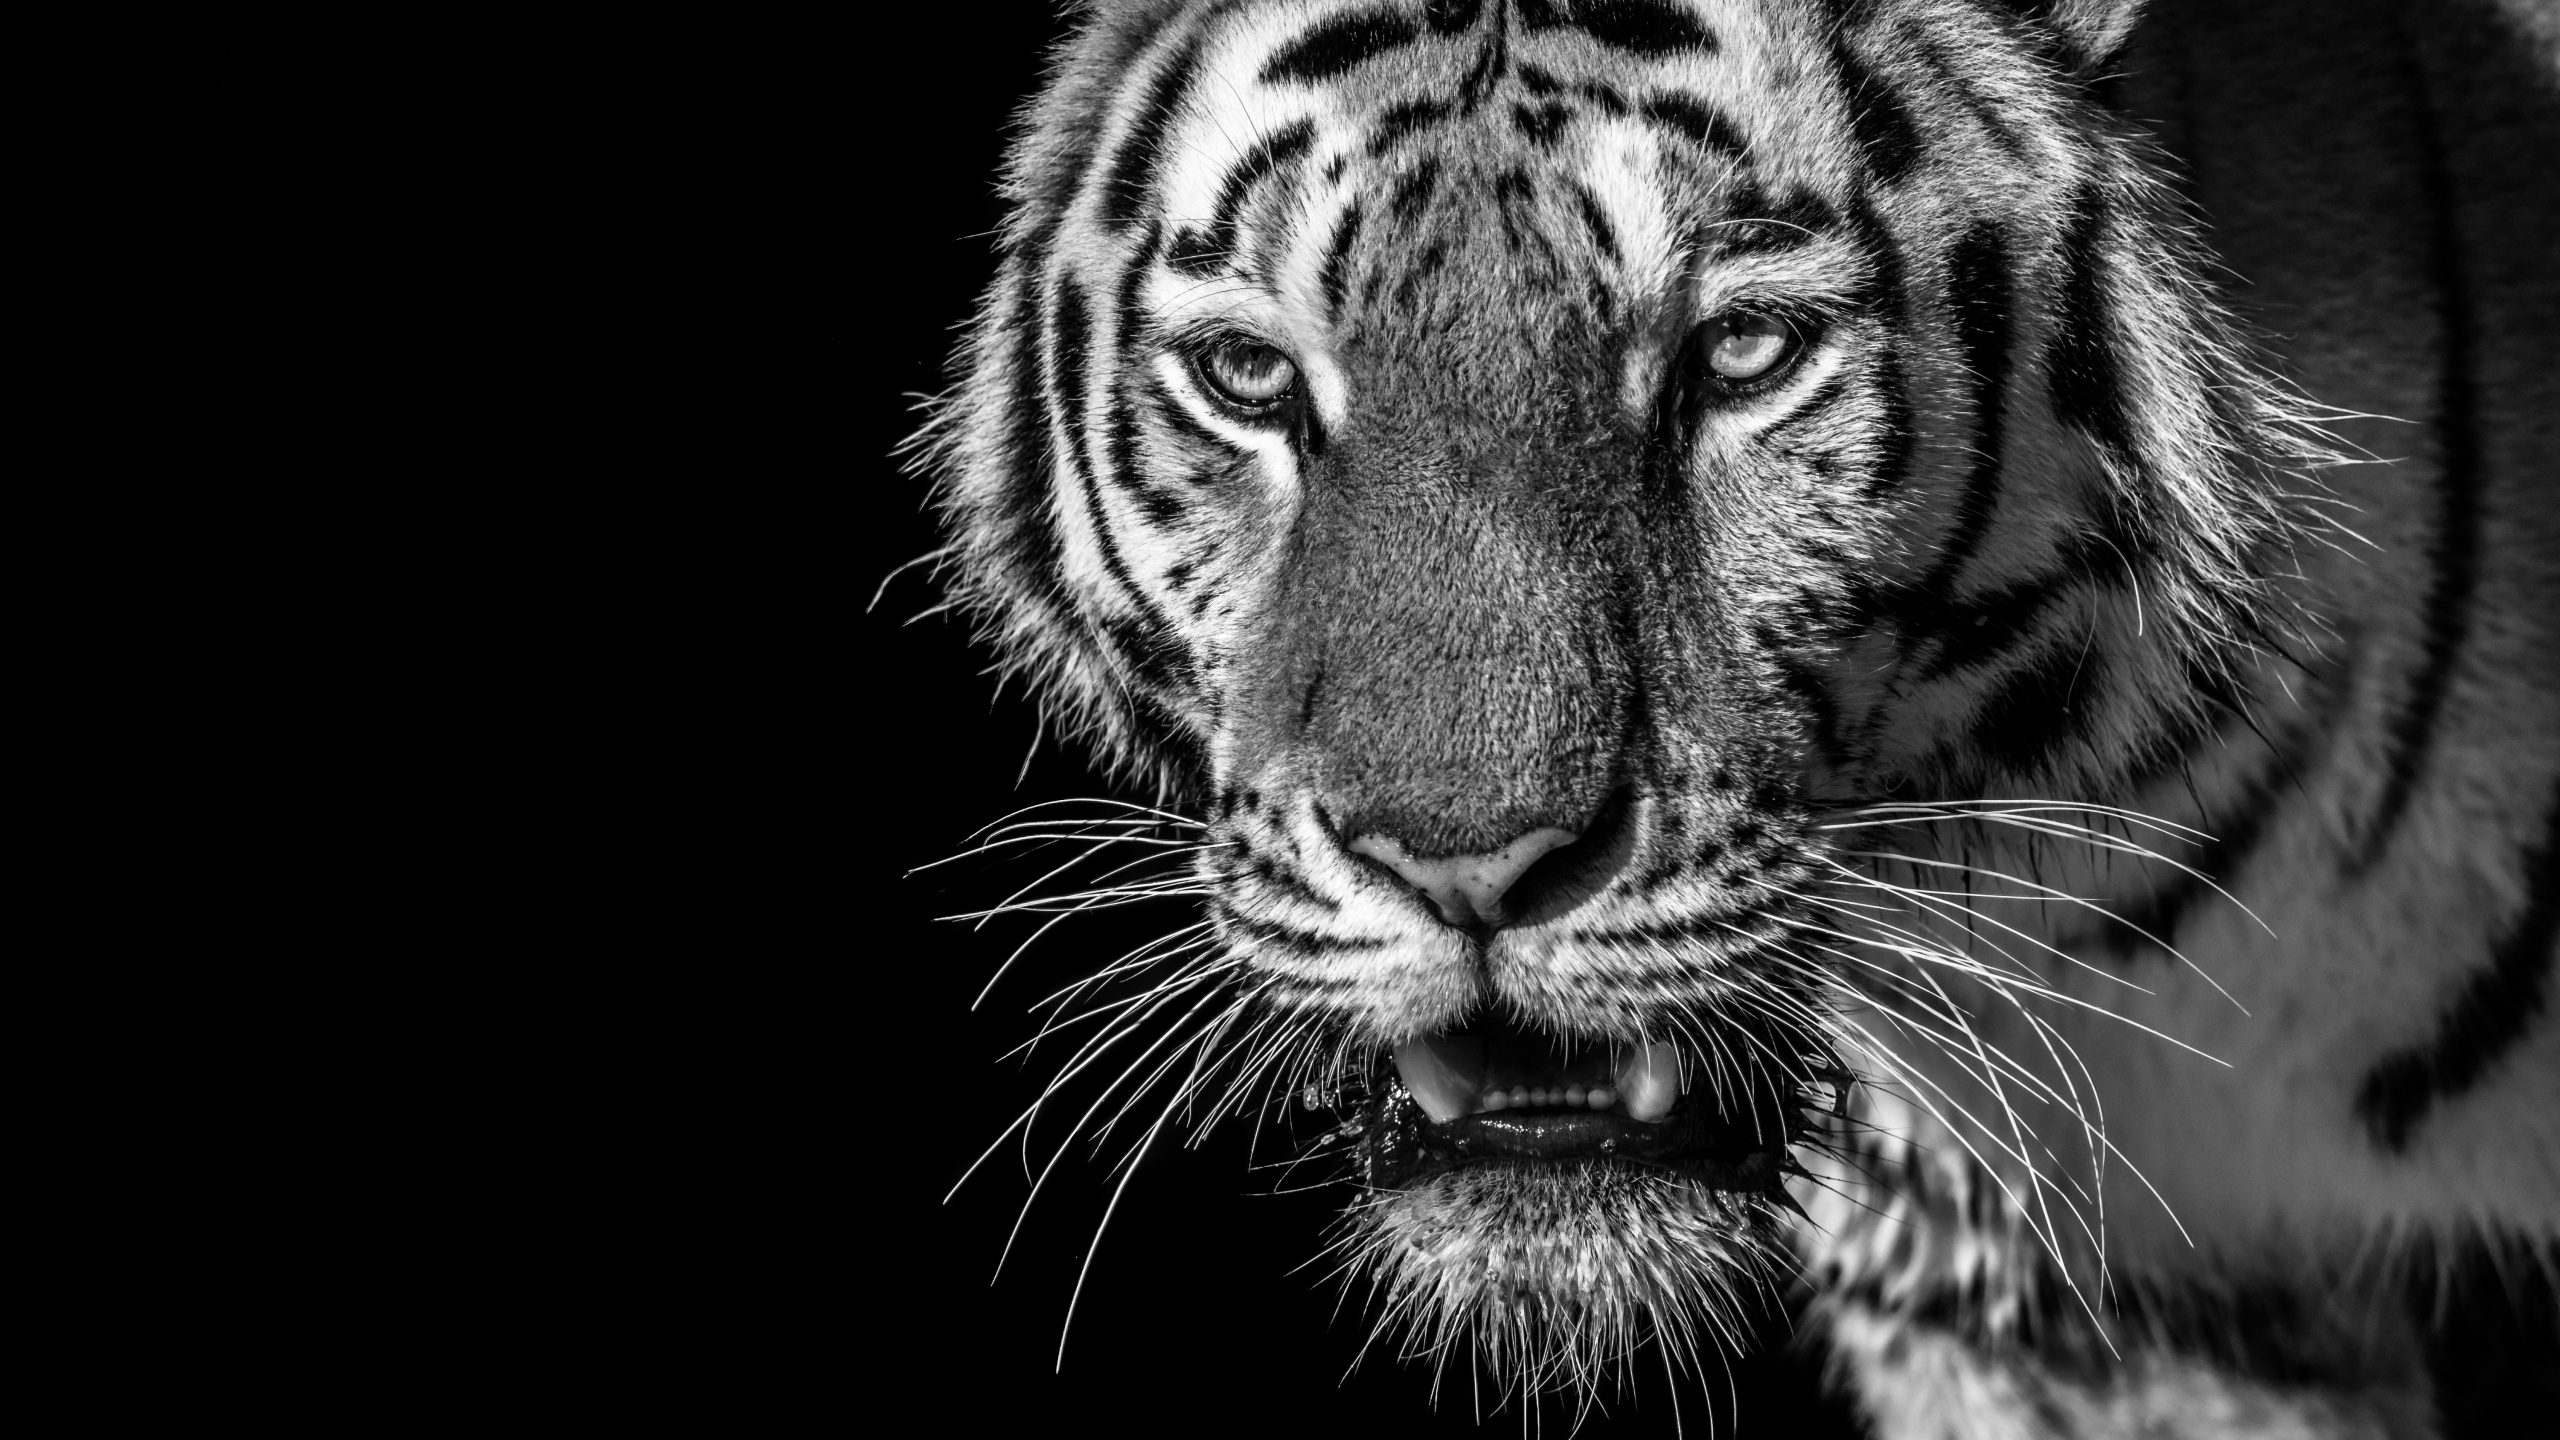 老虎, 白虎, 孟加拉虎, 野生动物, 胡须 壁纸 2560x1440 允许